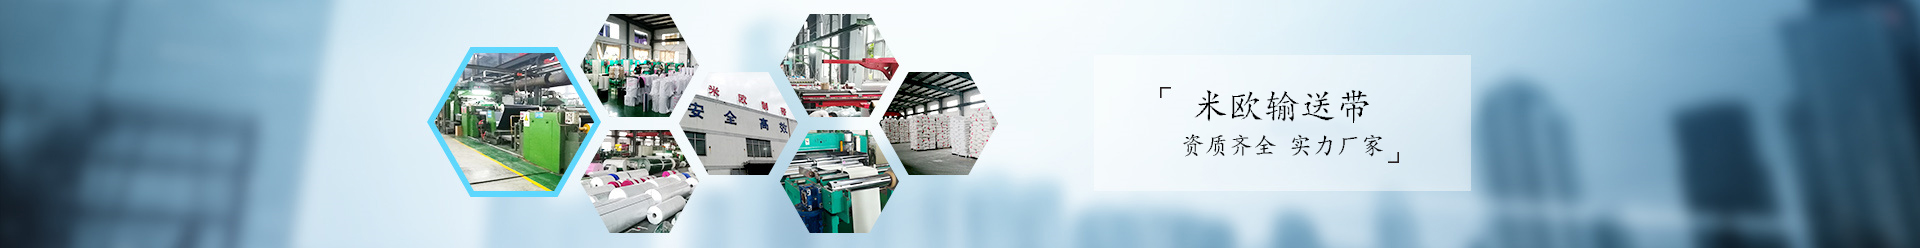 米欧PVC输送带生产厂家为您提供定制化生产服务。接头牢固